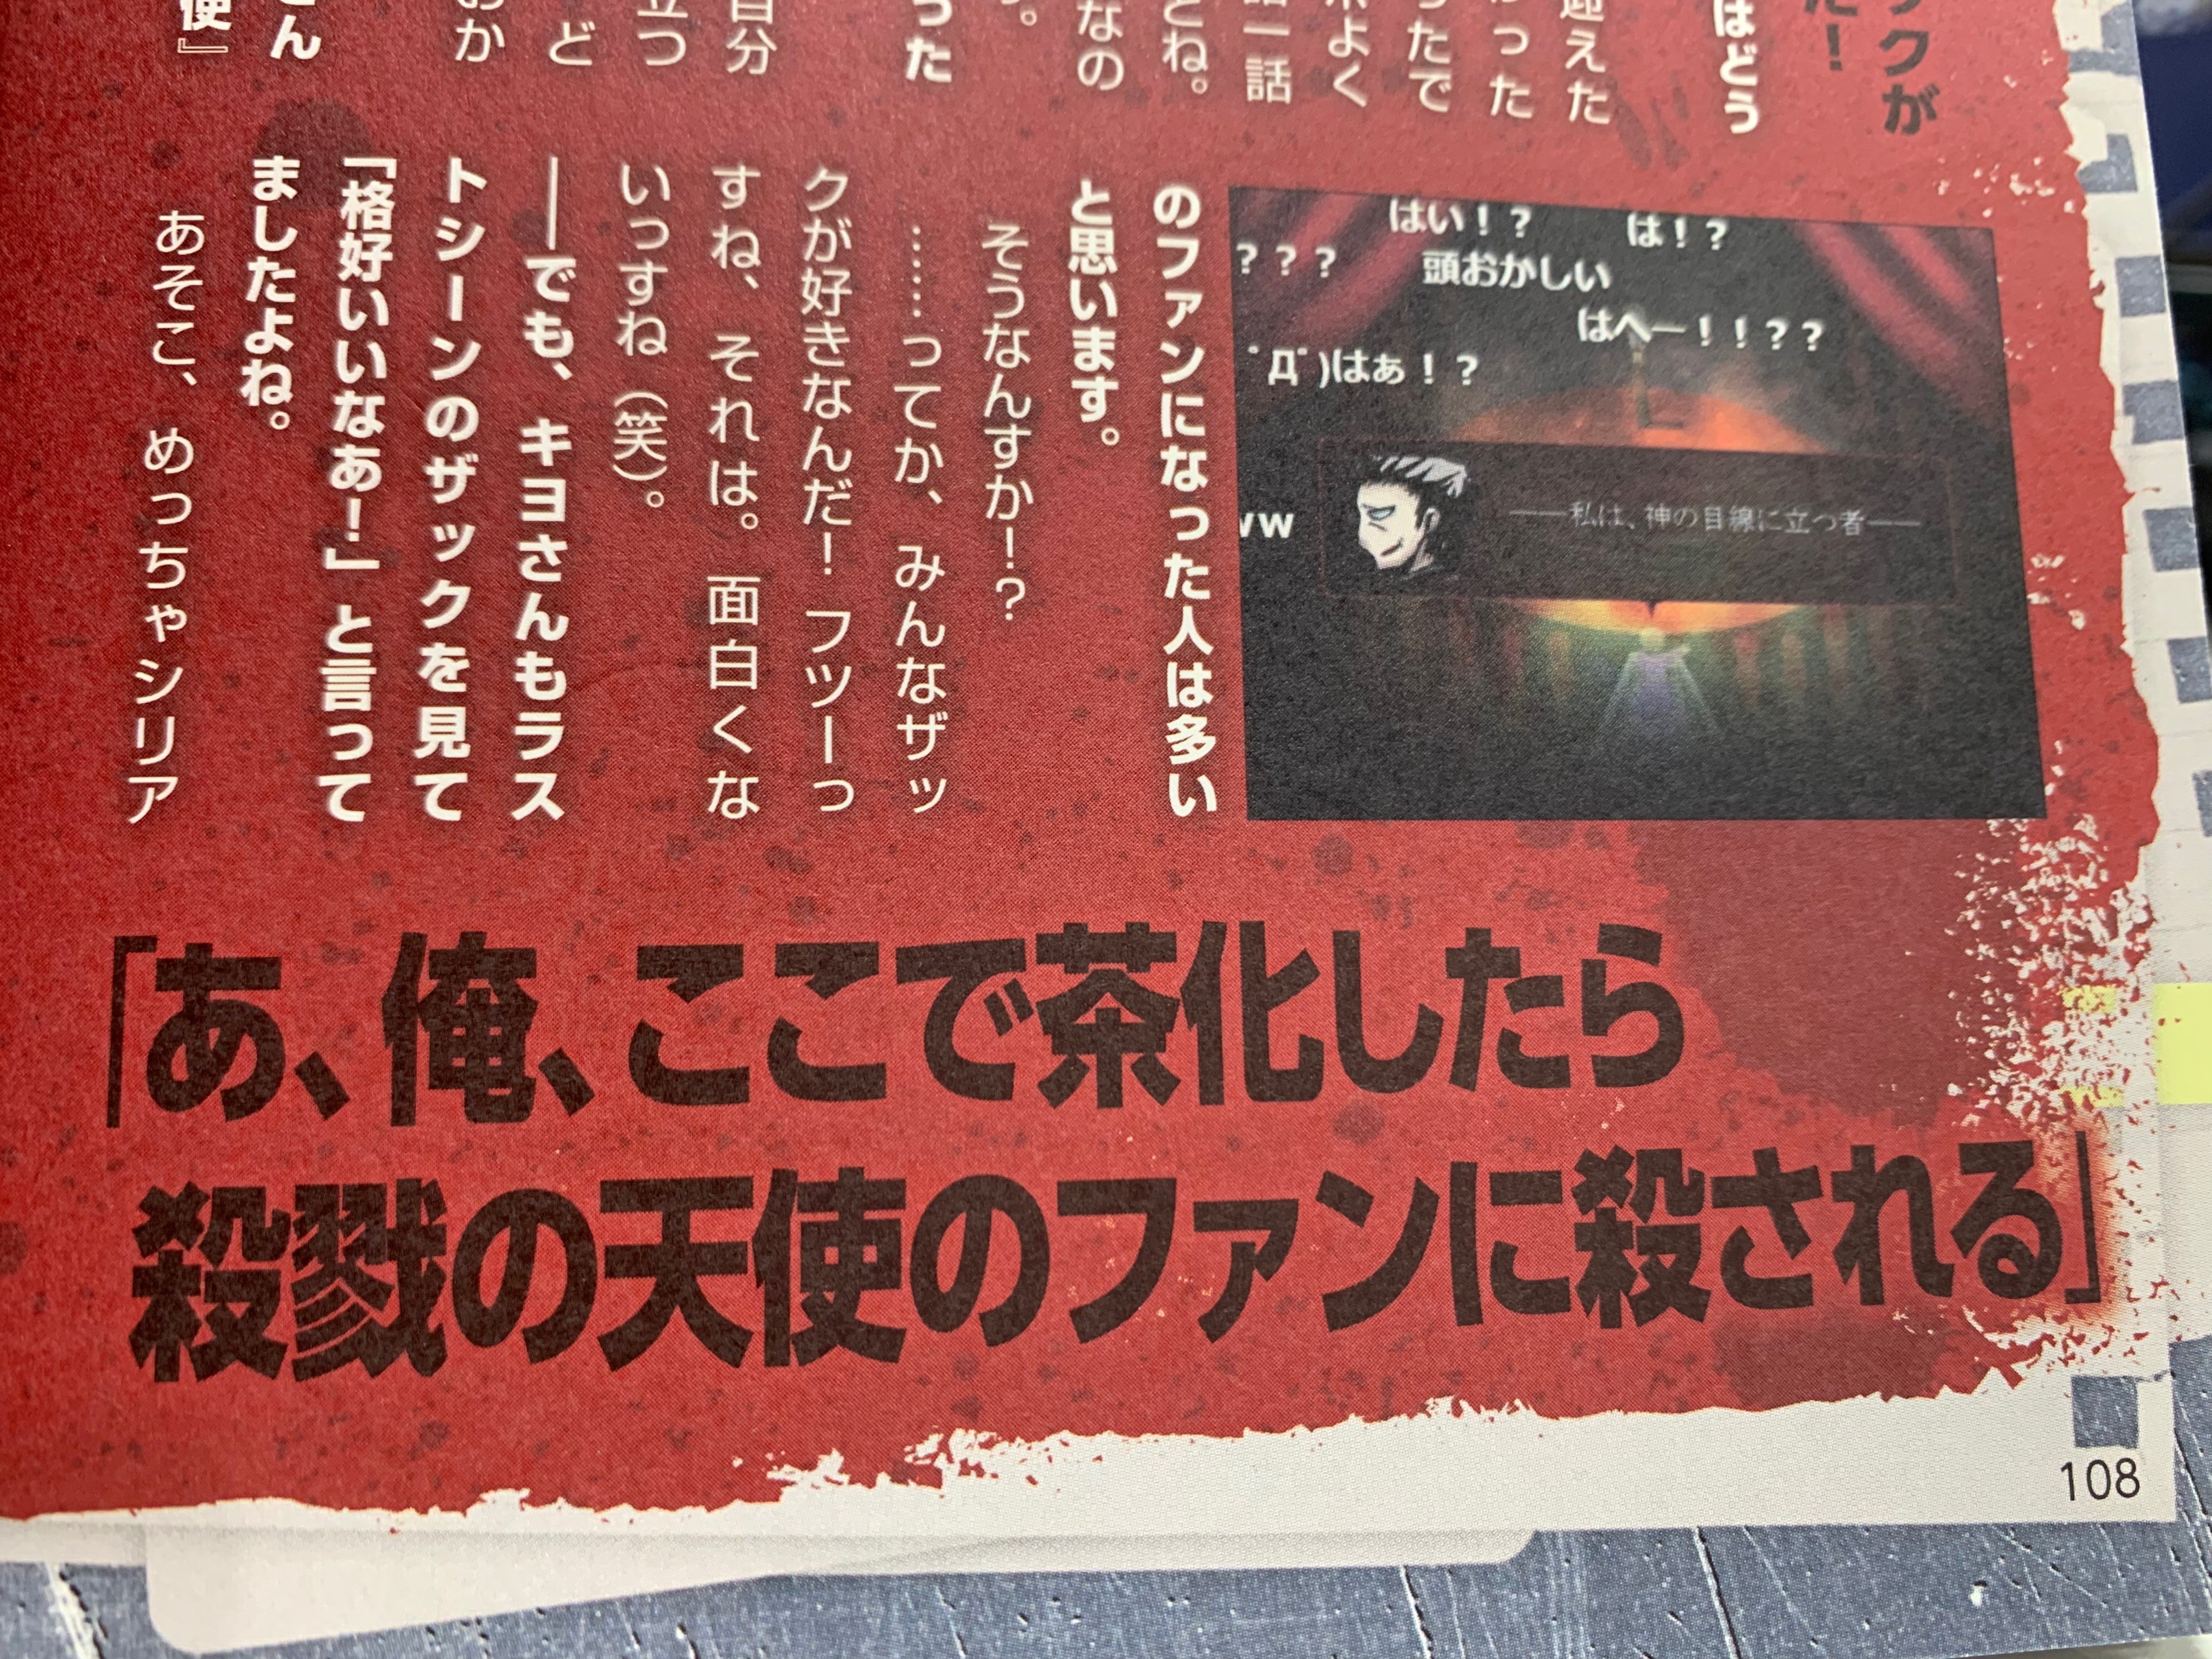 殺戮の天使 公式アカウント キヨさんが日本のインディーゲームに果たした様々な 功績 は 本当に巨大なものだと思います 活動10周年おめでとうございます 画像は 殺戮の天使 ファンブックのインタビューです笑 キヨ10周年